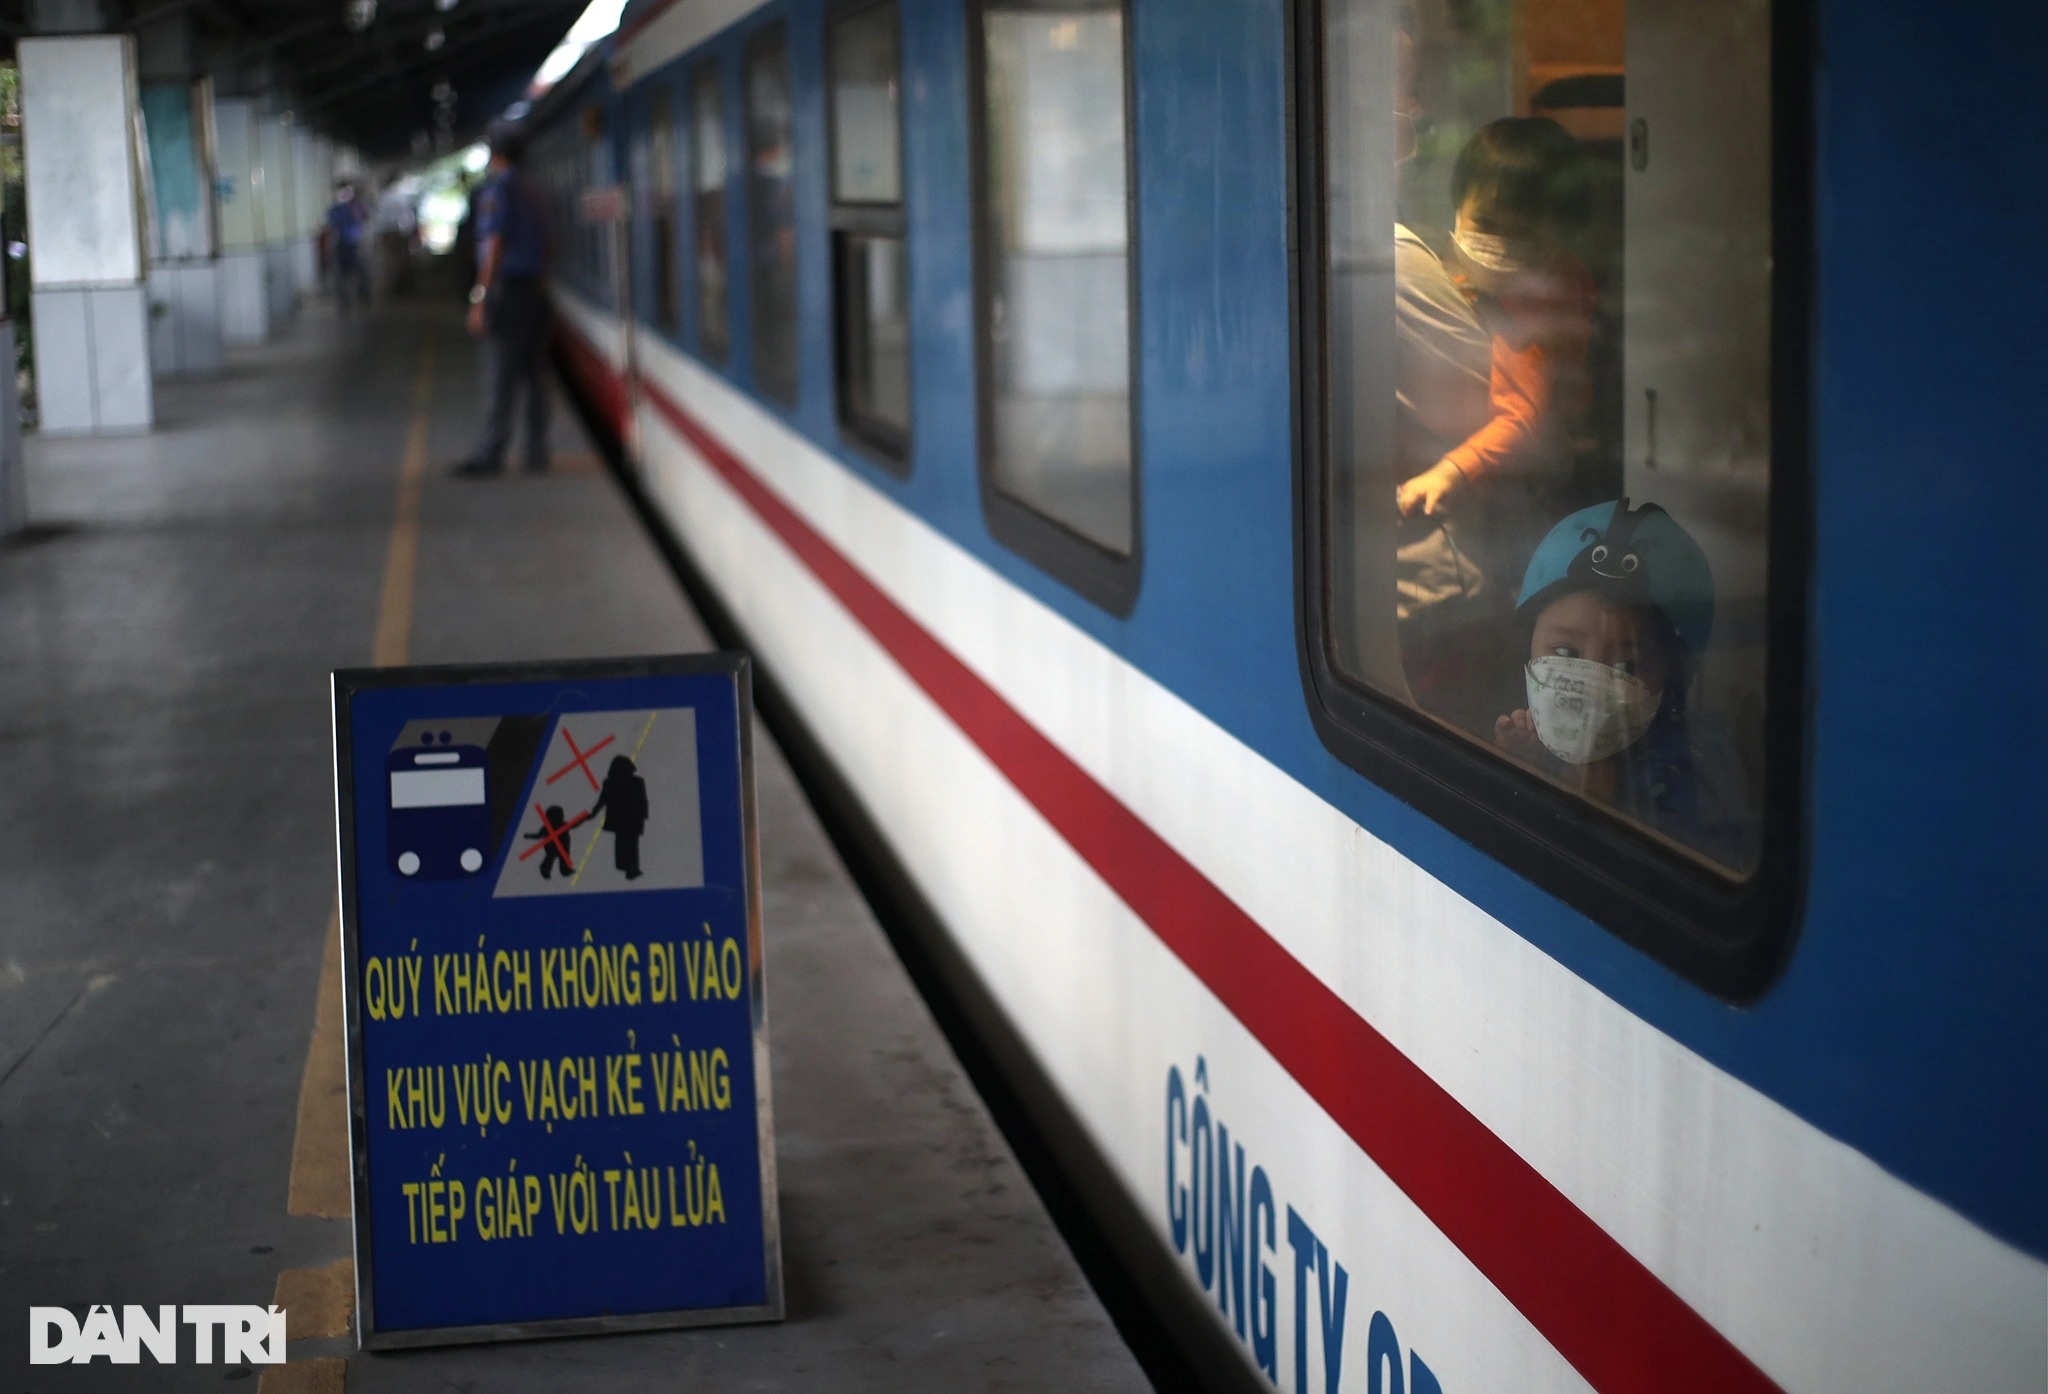 Chuyến tàu hỏa đầu tiên chạy trở lại, hành khách háo hức rời ga Sài Gòn - 13